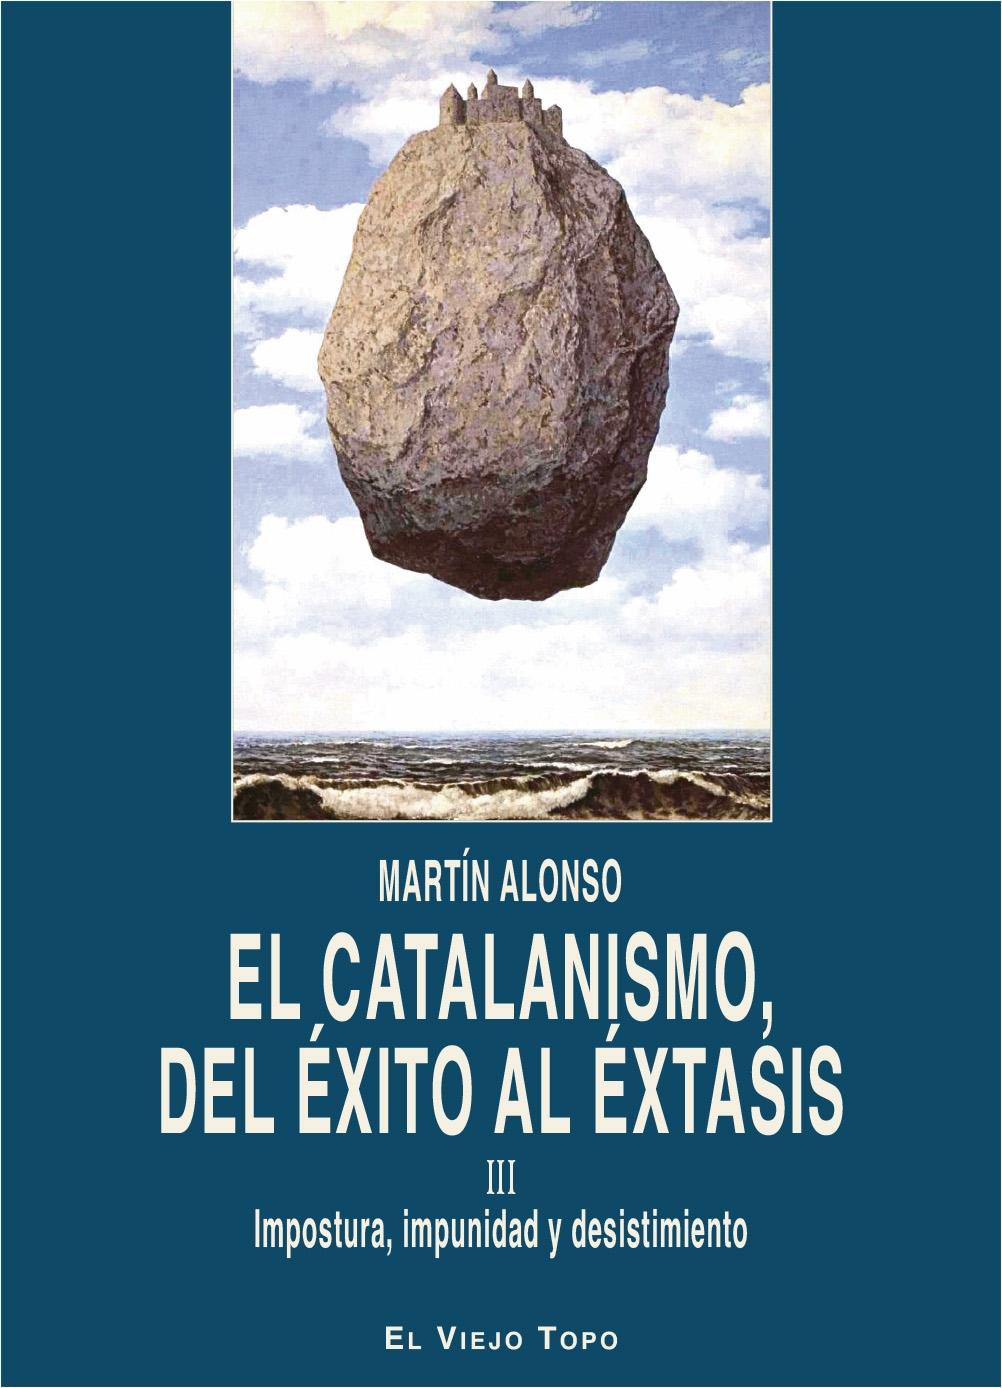 El catalanismo, del éxito al éxtasis. Vol III "Impostura, impunidad y desistimiento". 